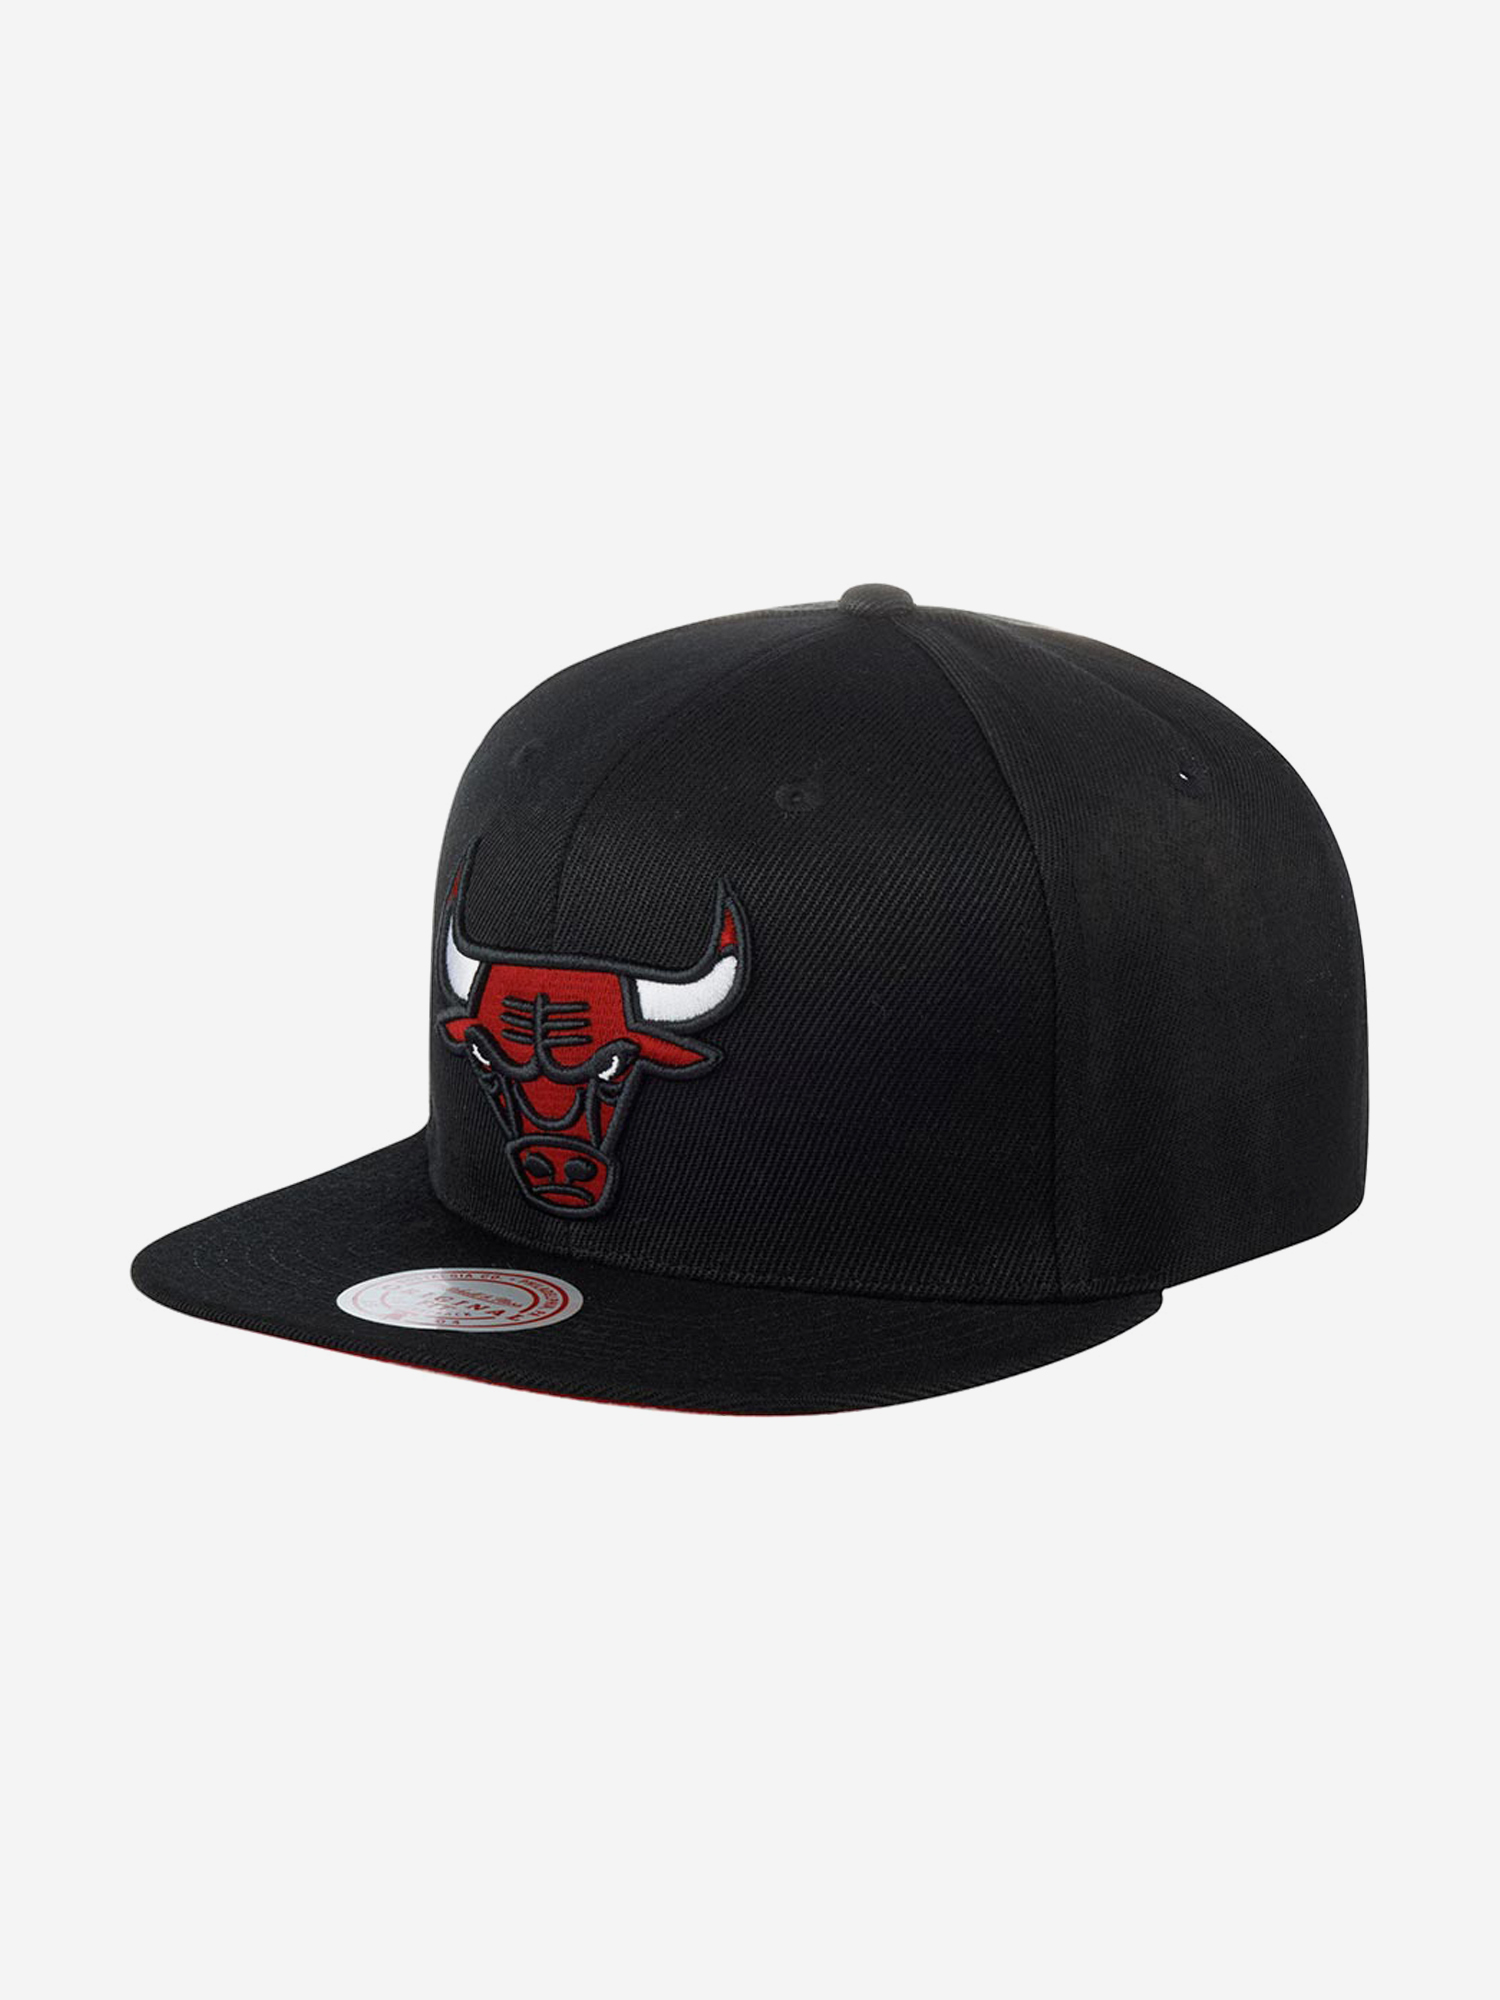 Бейсболка с прямым козырьком MITCHELL NESS 6HSSSH21270-CBUBLCK Chicago Bulls NBA (черный), Черный